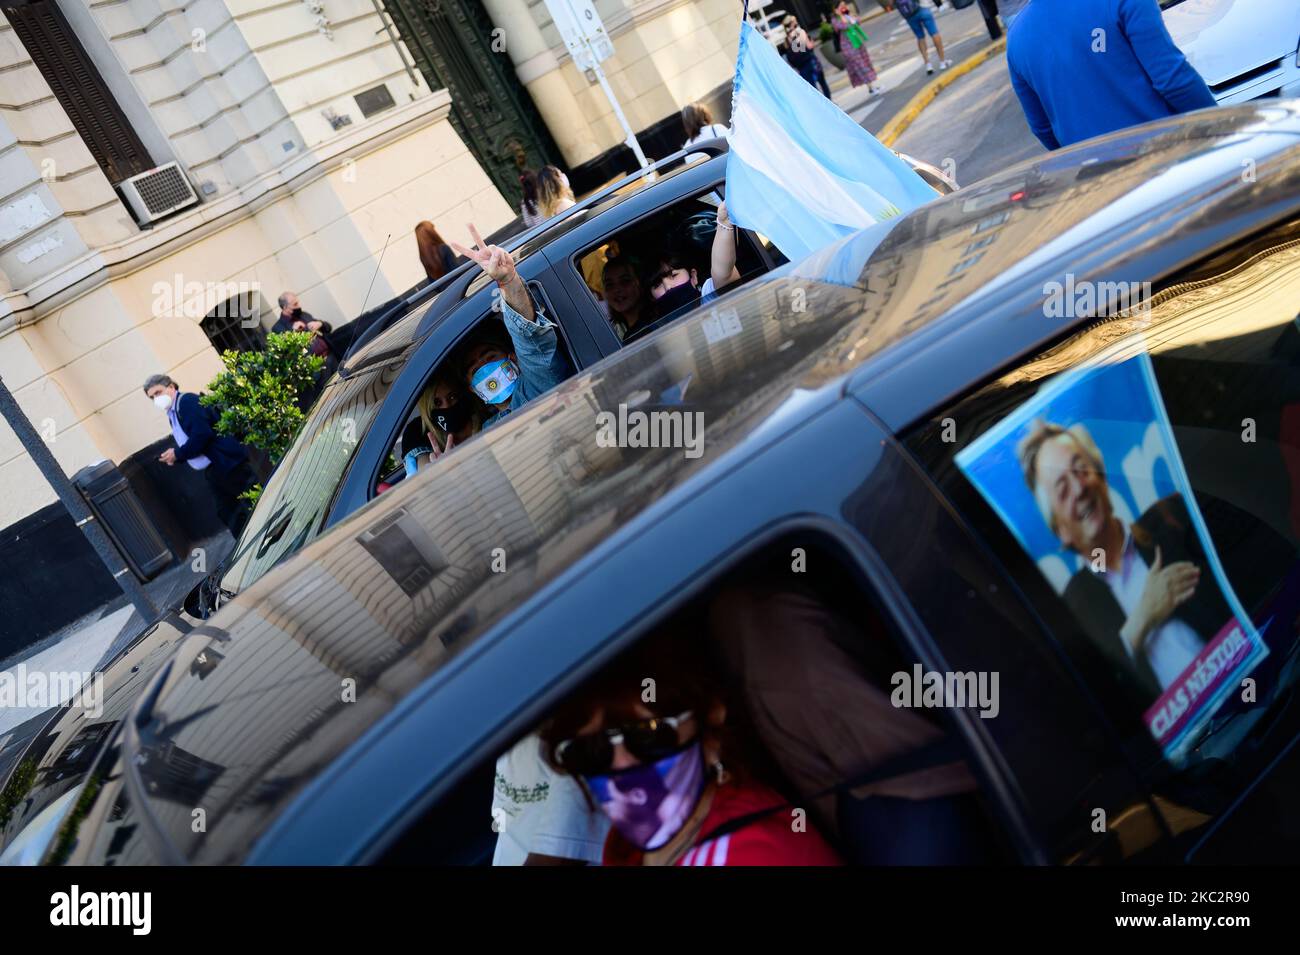 Manifestantes participan en un homenaje al ex presidente de Argentina (2003-2007) Néstor Kirchner el 27 de octubre de 2020 en Buenos Aires, Argentina. Kirchner murió de un ataque cardíaco a la edad de 60 años el 27 de octubre de 2010, en El Calafate, sur de Argentina. (Foto de Manuel Cortina/NurPhoto) Foto de stock